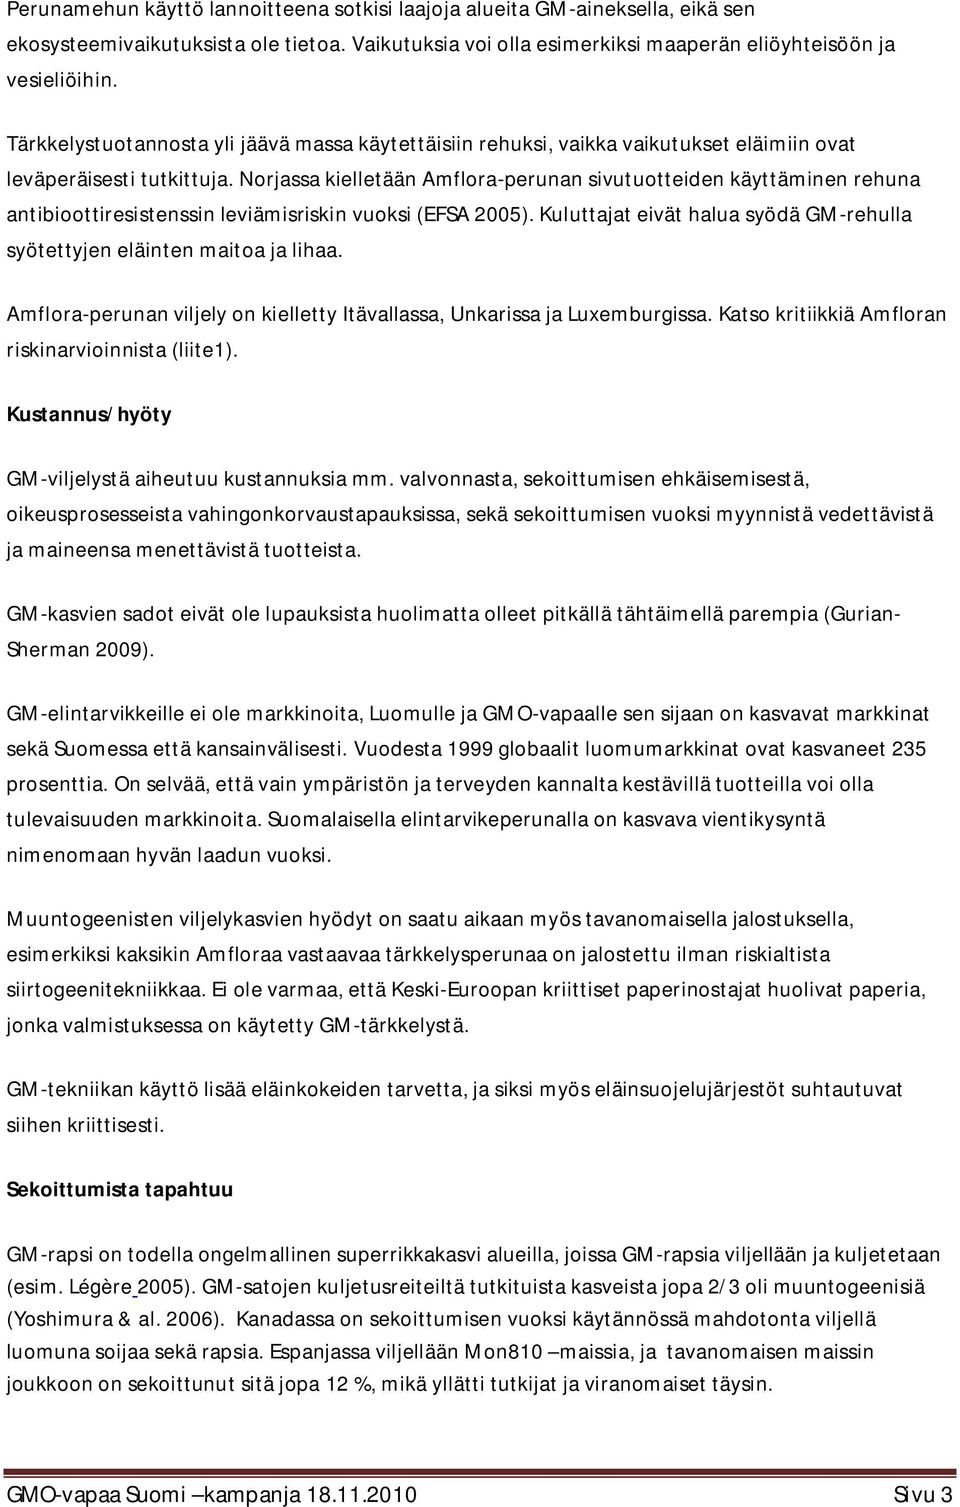 Norjassa kielletään Amflora-perunan sivutuotteiden käyttäminen rehuna antibioottiresistenssin leviämisriskin vuoksi (EFSA 2005).